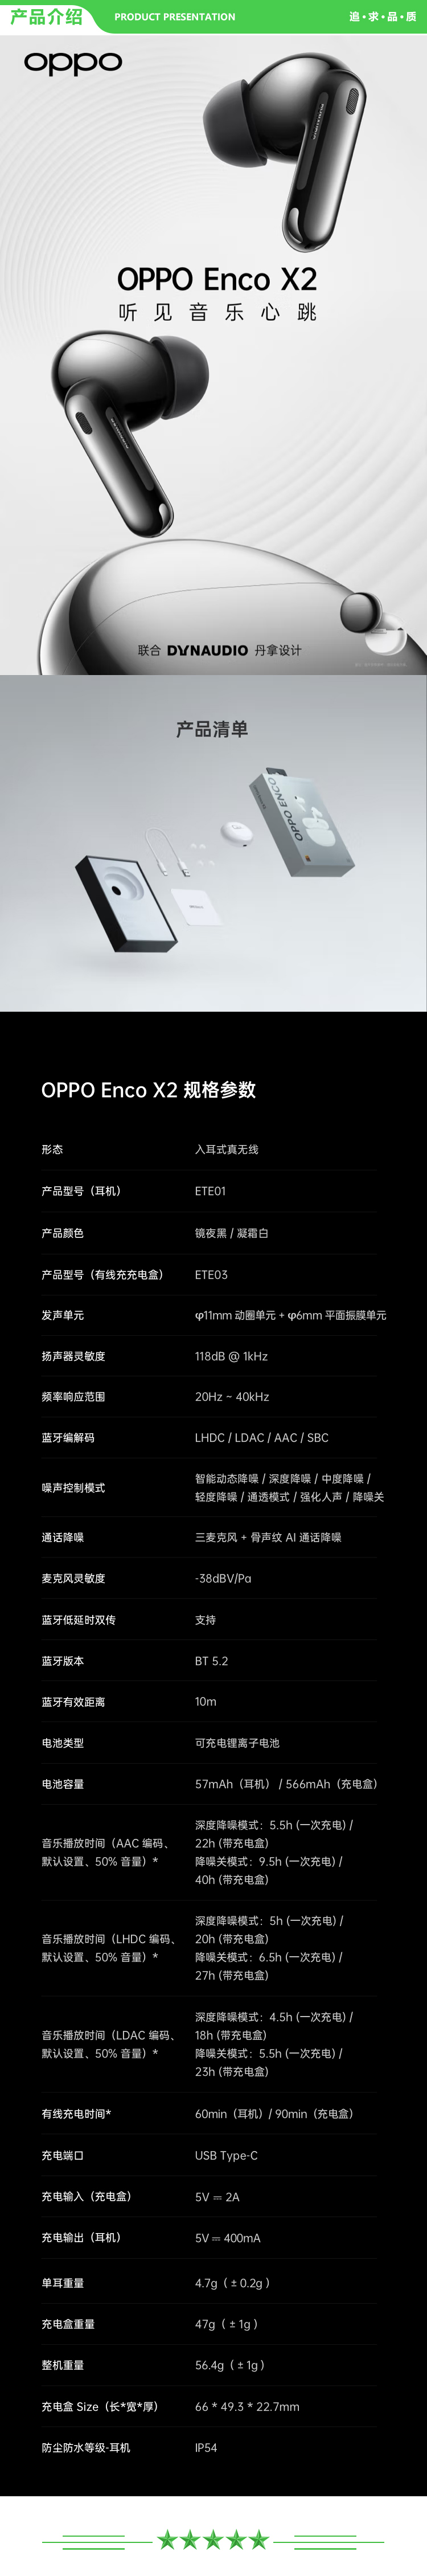 OPPO Enco X2 ETE01 凝霜白 真无线入耳式蓝牙耳机 降噪游戏音乐运动耳机 久石让调音 通用苹果华为小米手机 无线充版 .jpg